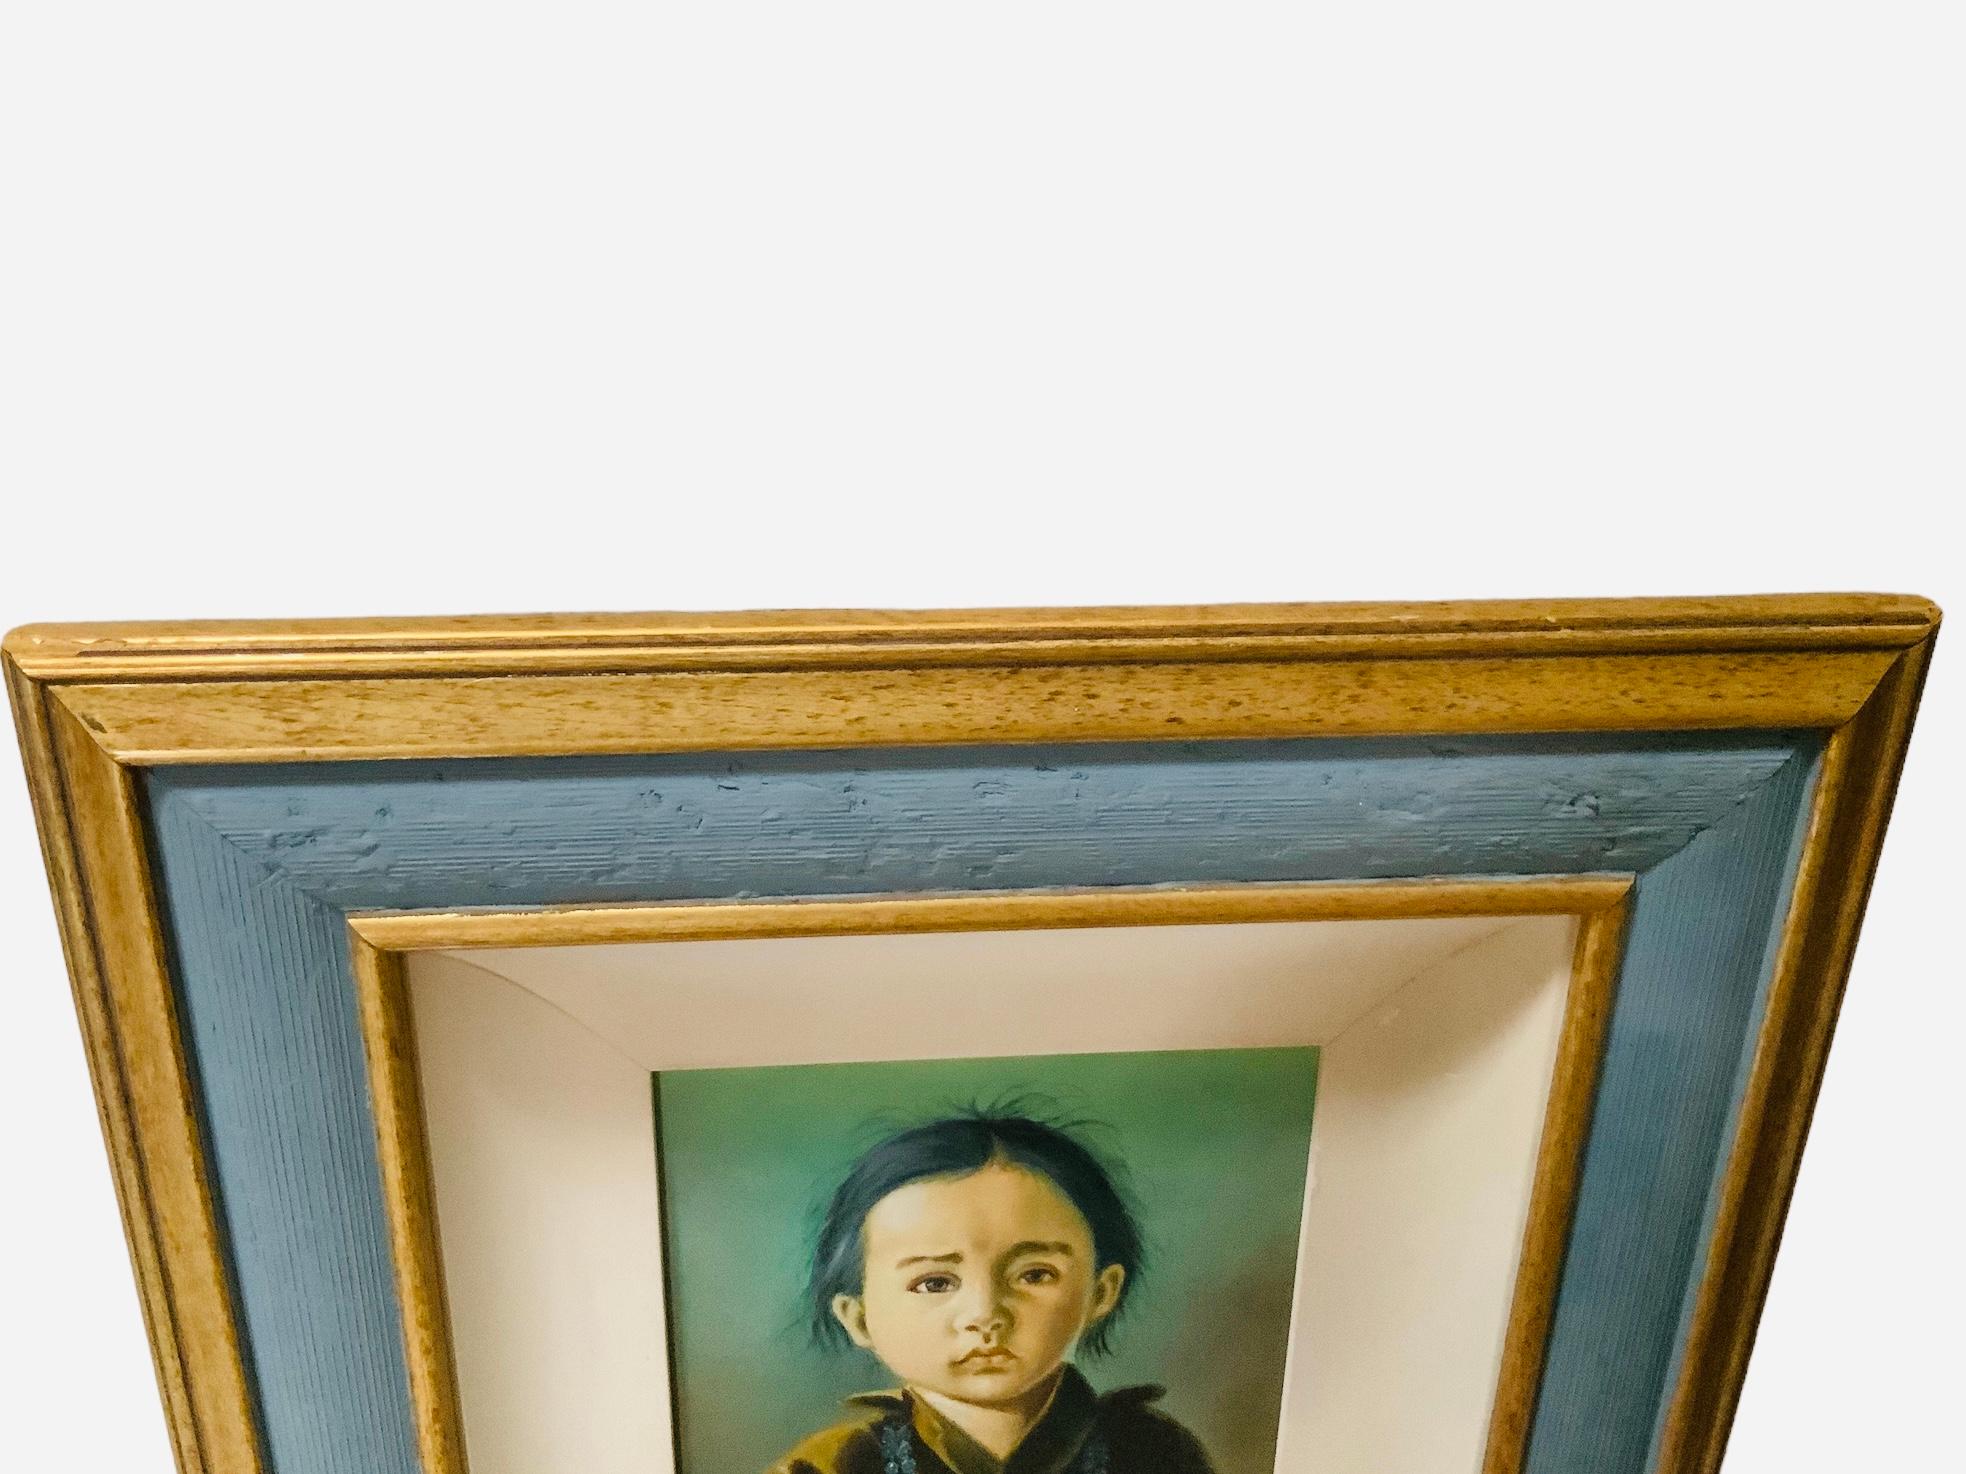 Dies ist ein Gemälde eines indianischen Jungen. Es zeigt das handgemalte Porträt eines Navajo-Kindes. Er hat schwarzes Haar und sehr ausdrucksstarke braune Augen. Er trägt ein dunkelbraunes Hemd und eine türkisfarbene Halskette. Das Gemälde ist in